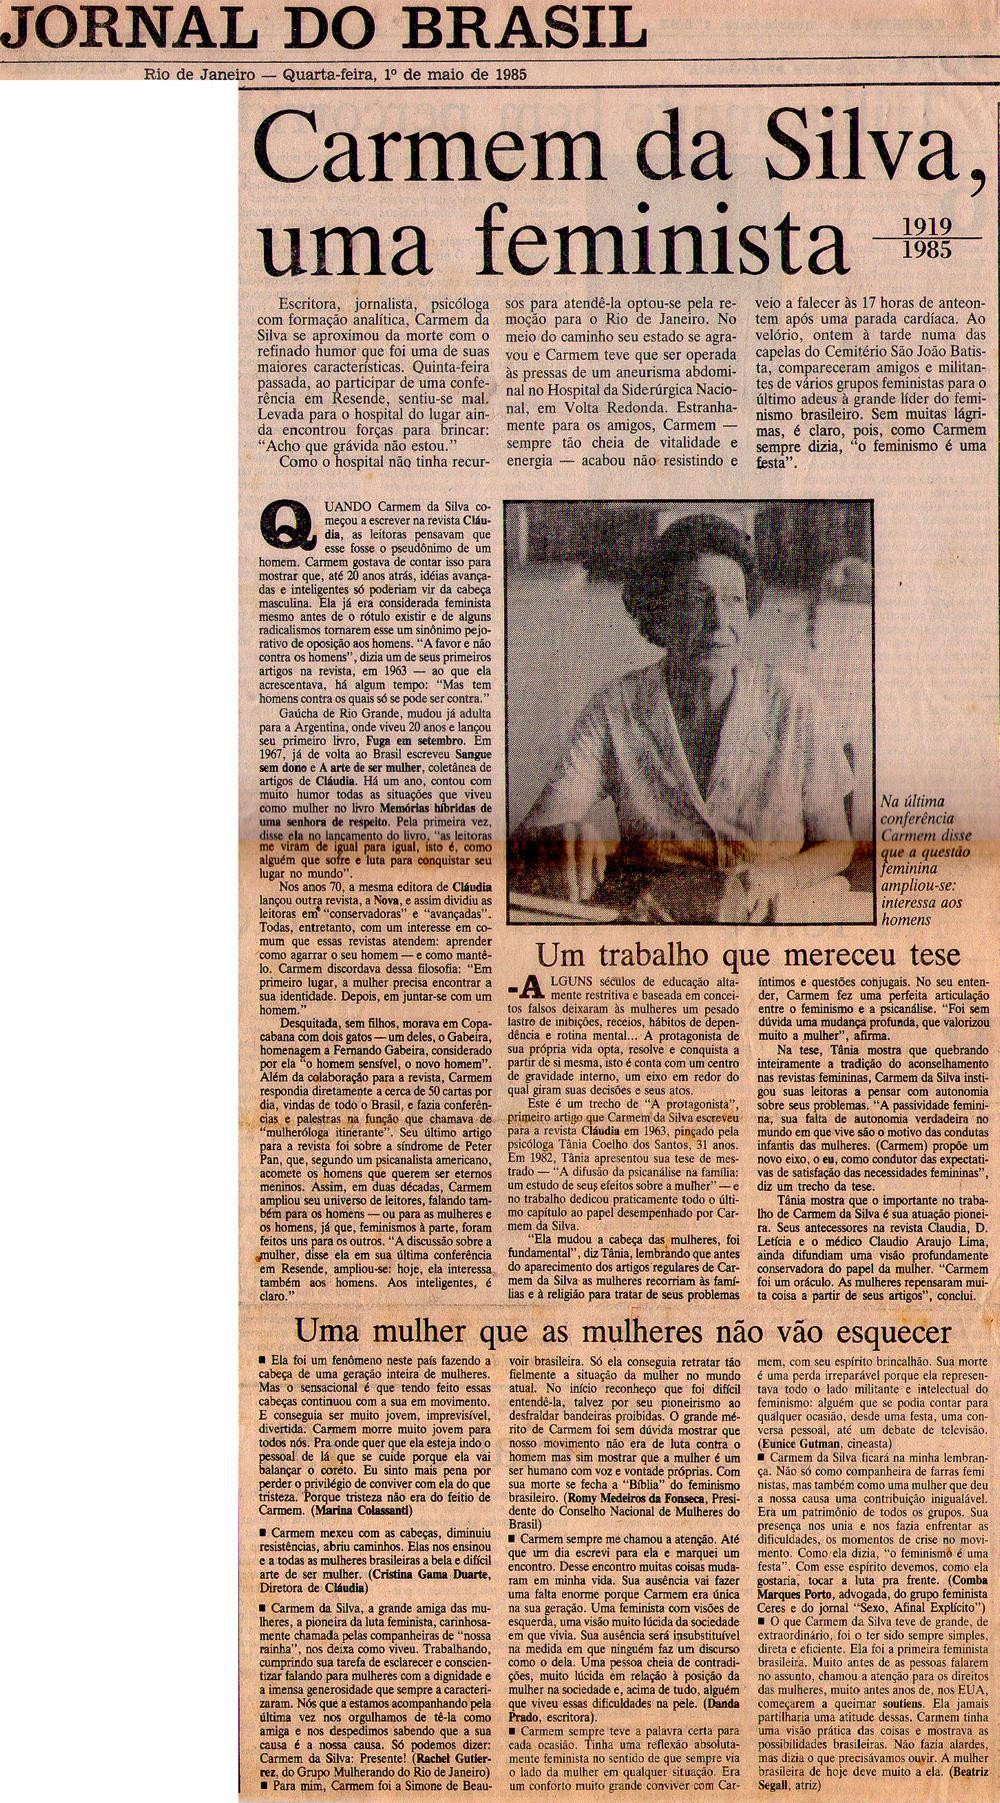 01 de Maio de 1985 - Jornal do Brasil. Carmem da Silva, uma feminista.